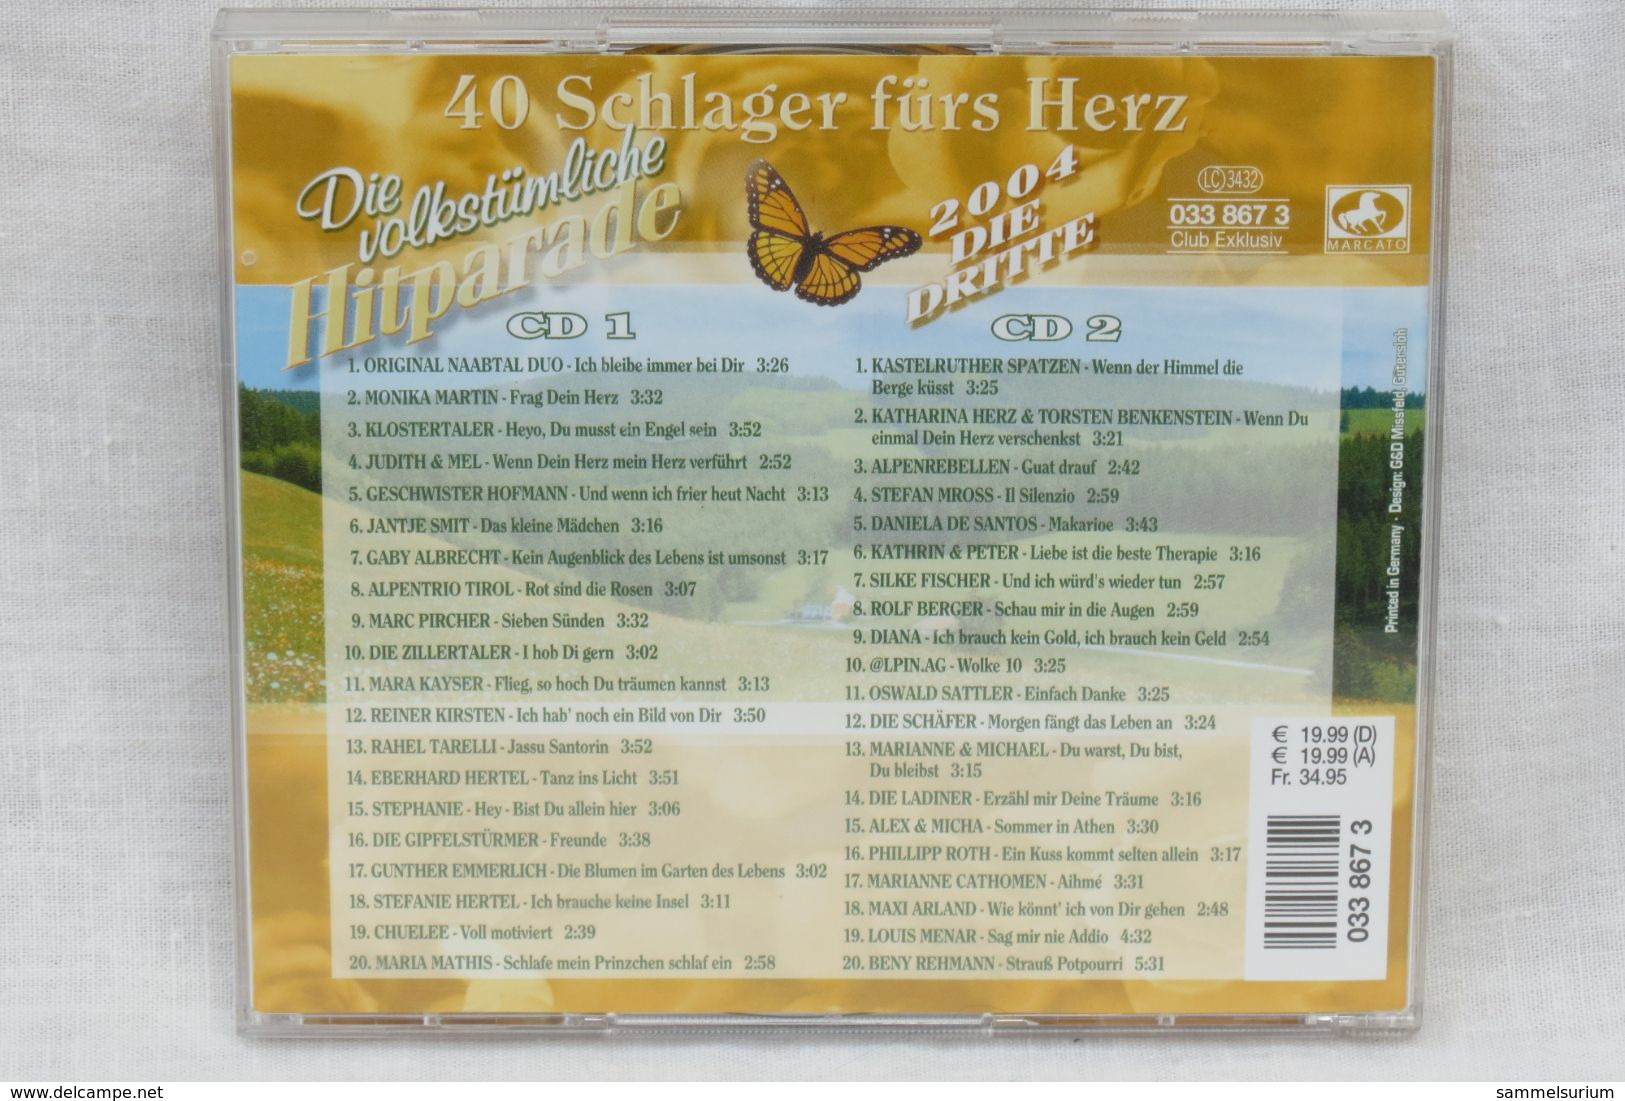 2 CDs "Die Volkstümliche Hitparade" 40 Schlager Fürs Herz, Ausgabe 2004 Die Dritte - Other - German Music